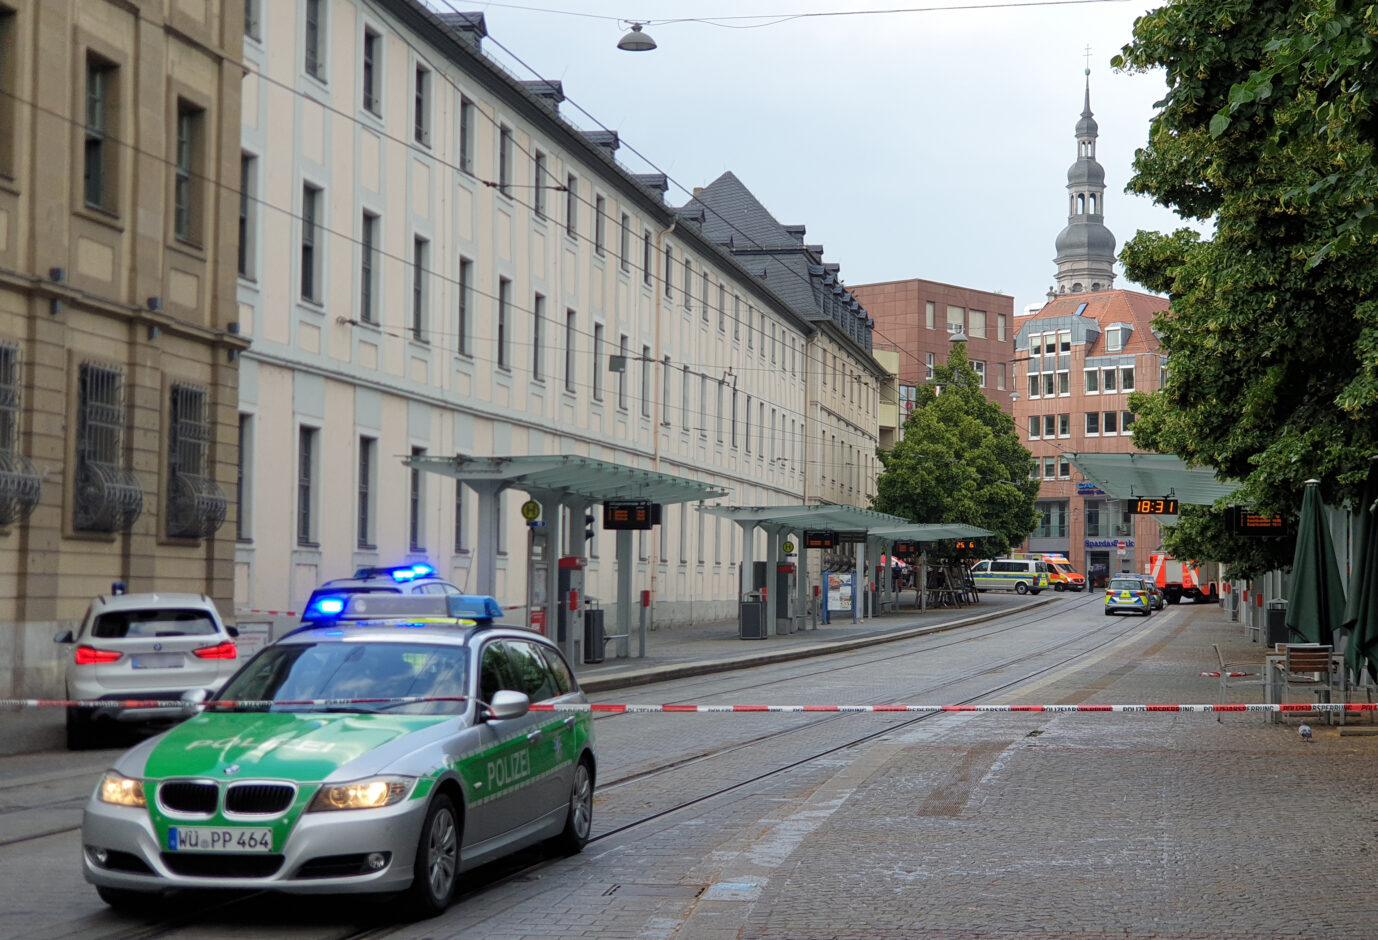 Die Polizei riegelt die Würzburger Innenstadt nach der Messerattacke ab Foto: picture alliance/dpa | Carolin Gißibl